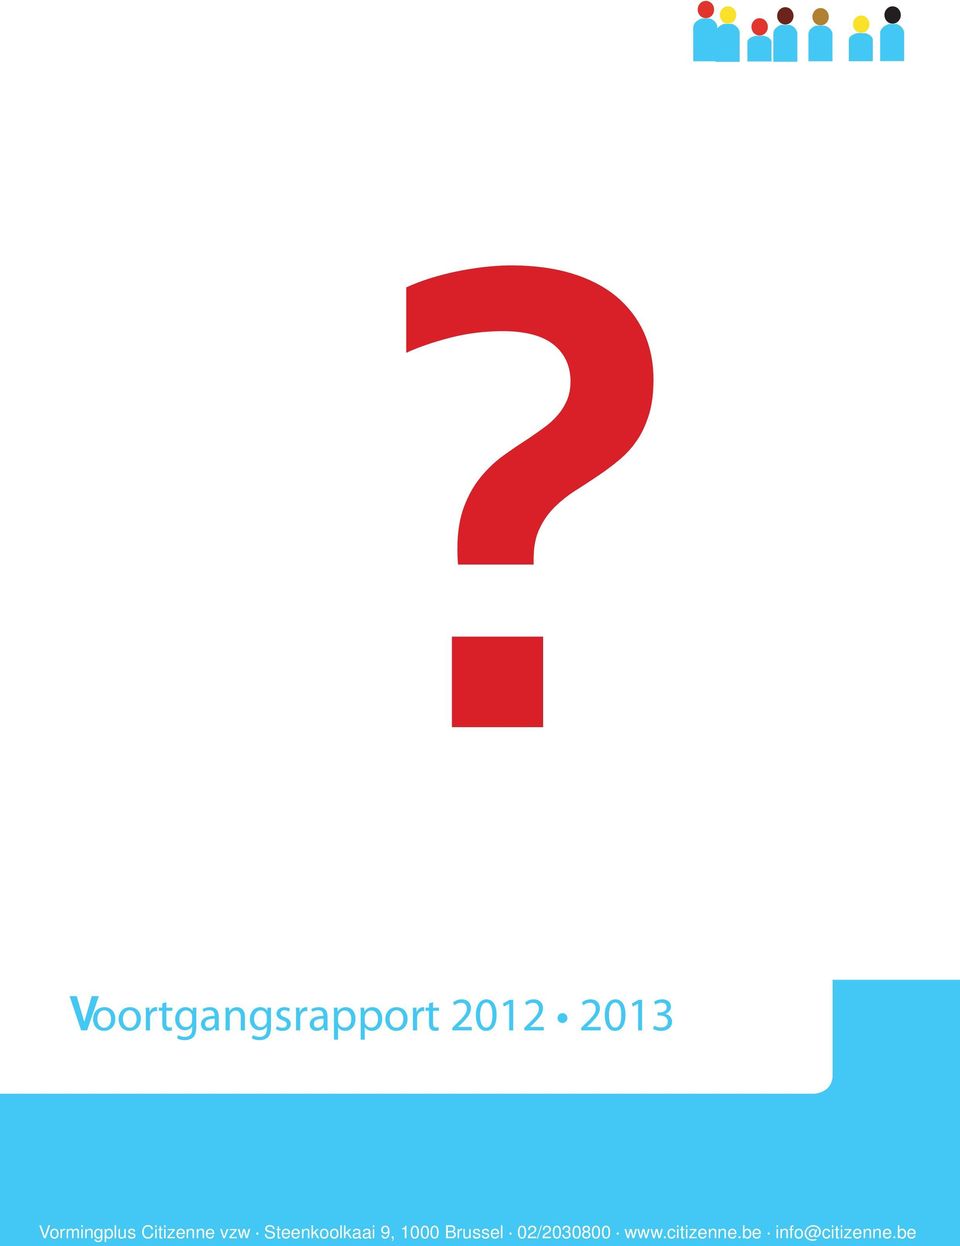 Voortgangsrapport 2012 2013 Vormingplus